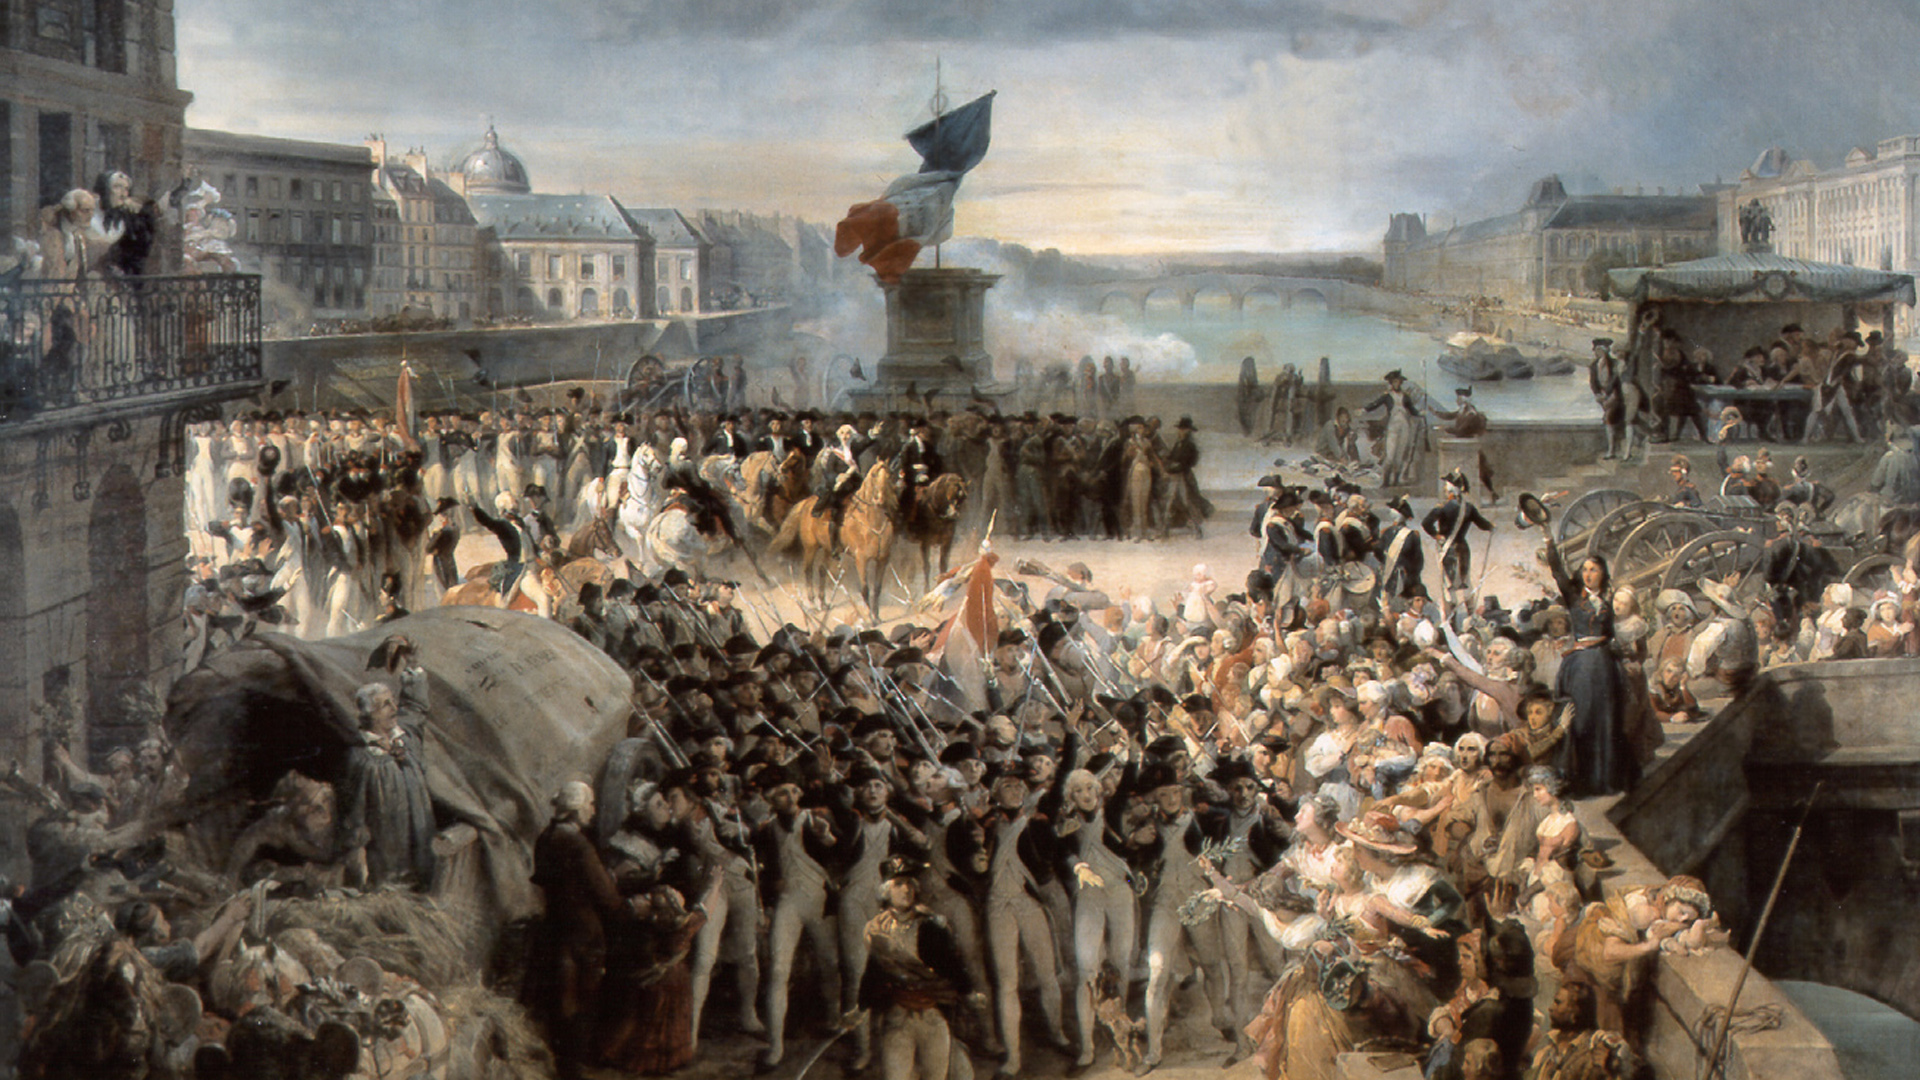 Республика 18 век. Великая французская революция 1789-1799. Французская революция 1794. Штурм дворца Тюильри 10 августа 1792 года. Революция во Франции 1789.